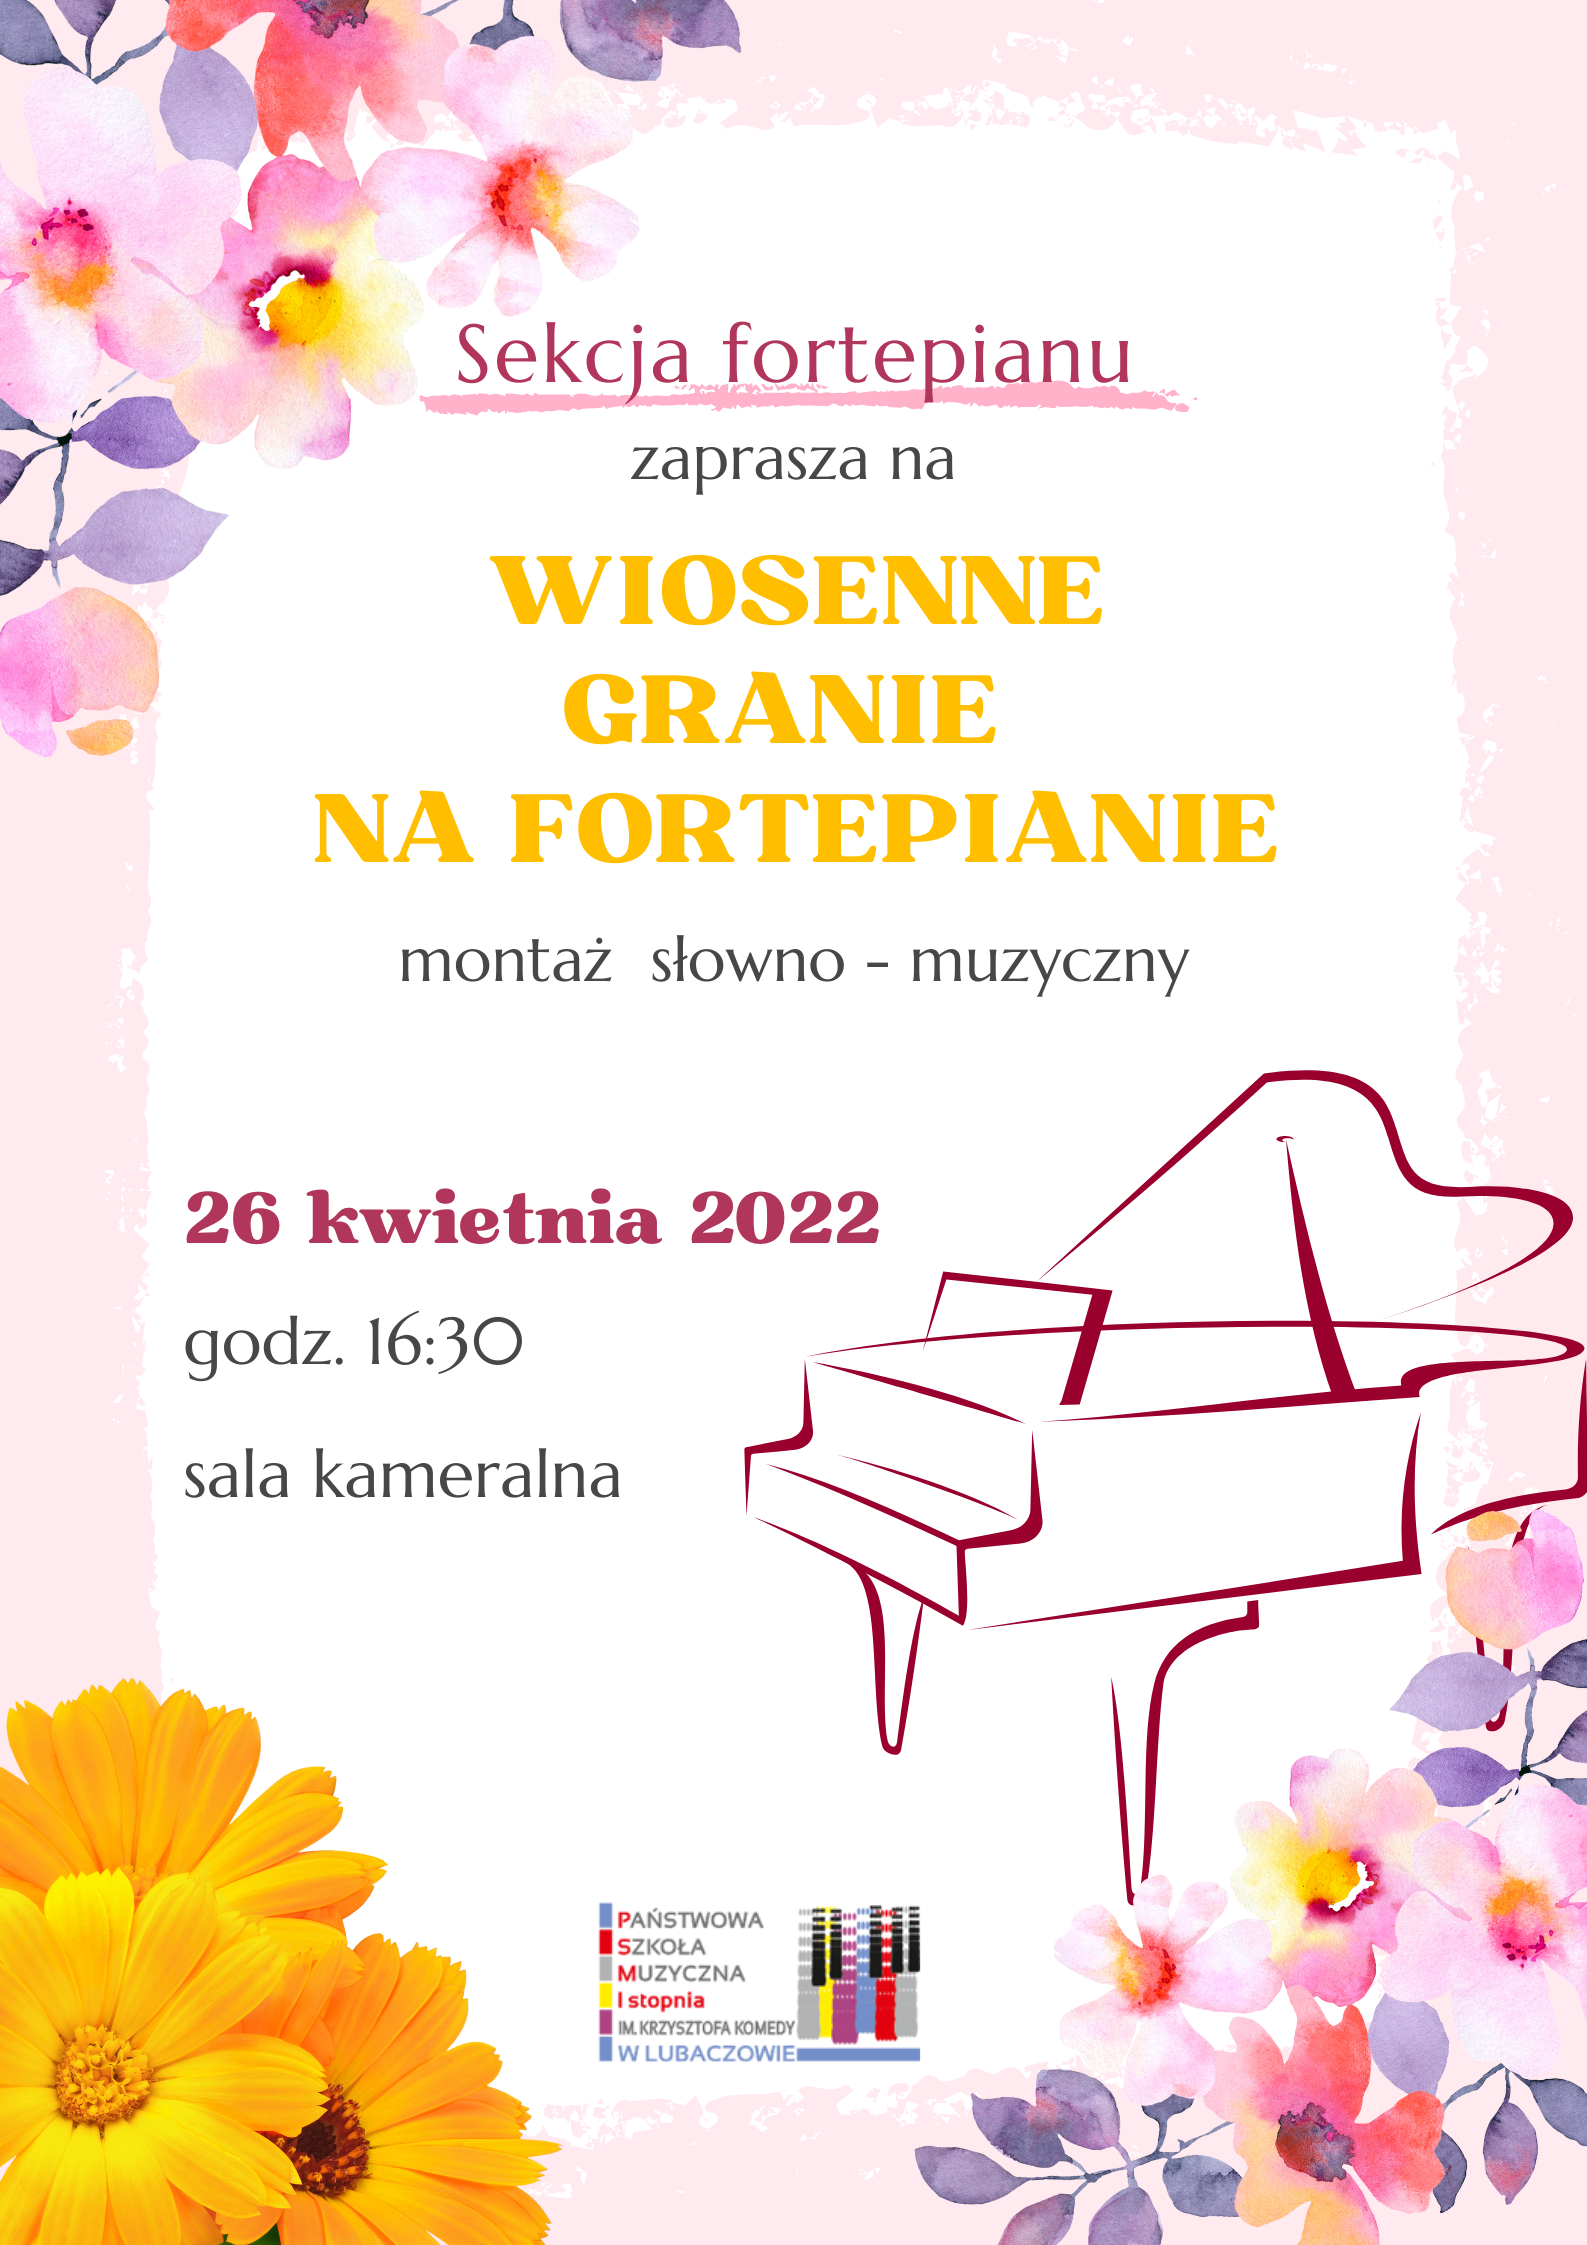 Jasna grafika z ikoną fortepianu i motywami kwiatowymi, logo szkoły i tekstem "Wiosenne granie na fortepianie - montaż słowno-muzyczny"